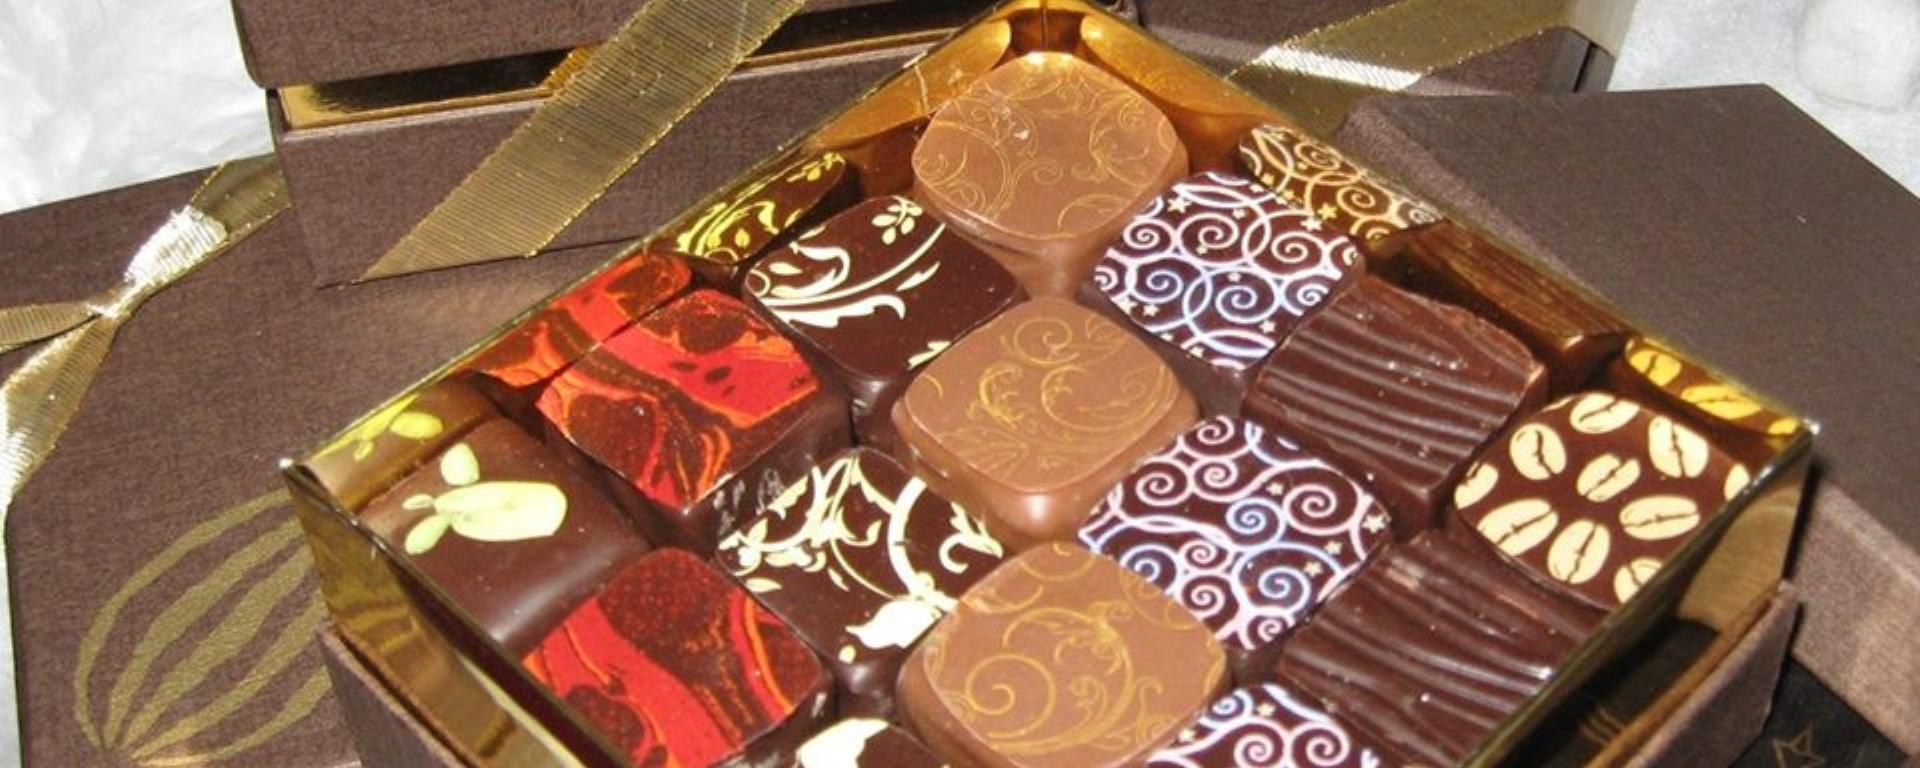 2017 - Chocolaterie cbc - chocolats CB